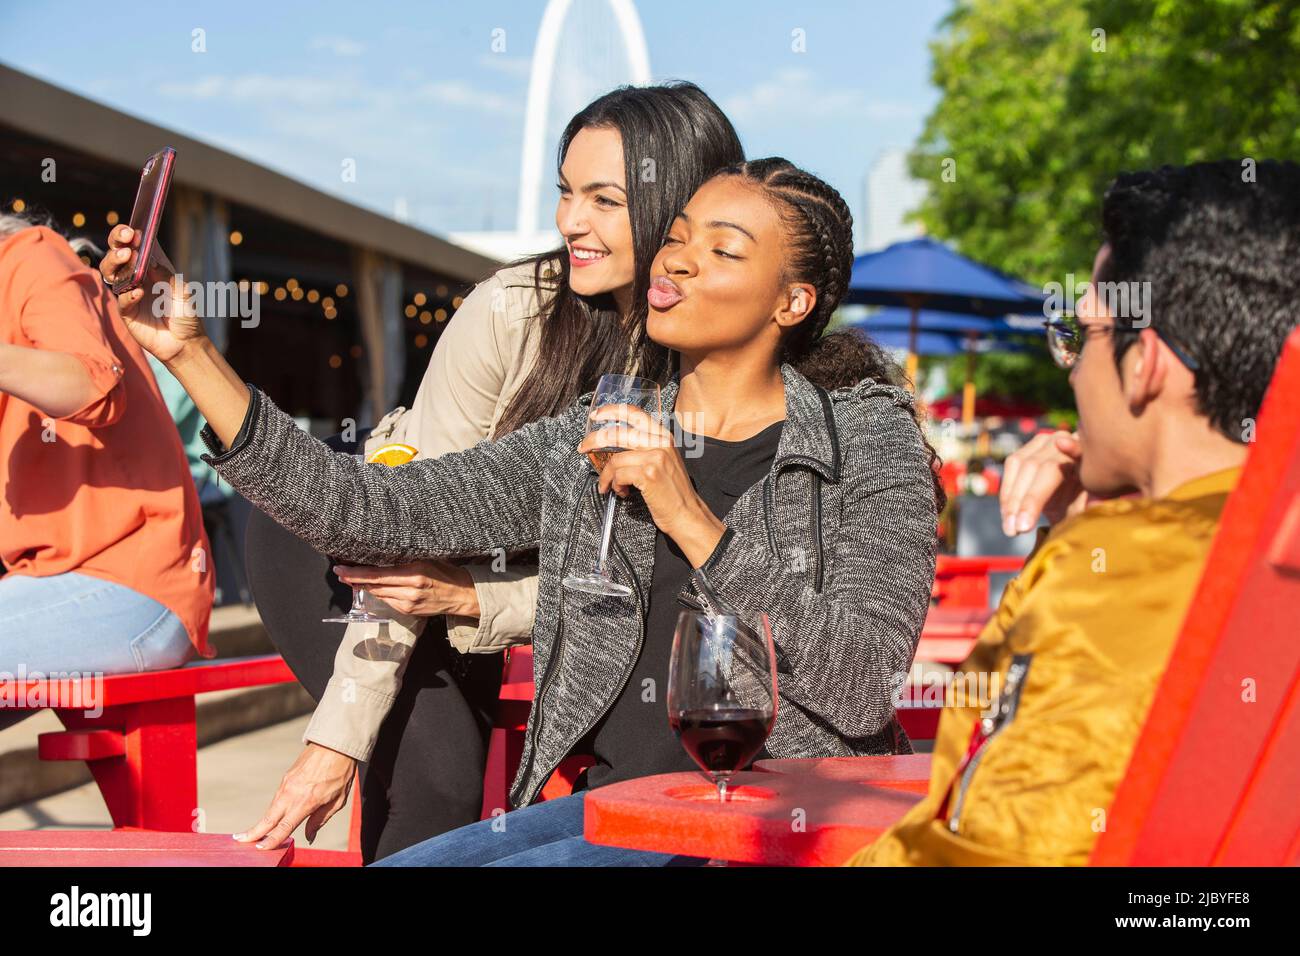 Gruppo di giovani collaboratori che si affacciano sul patio all'aperto con bevande per l'happy hour, due ragazze che prendono selfie con telefono cellulare Foto Stock